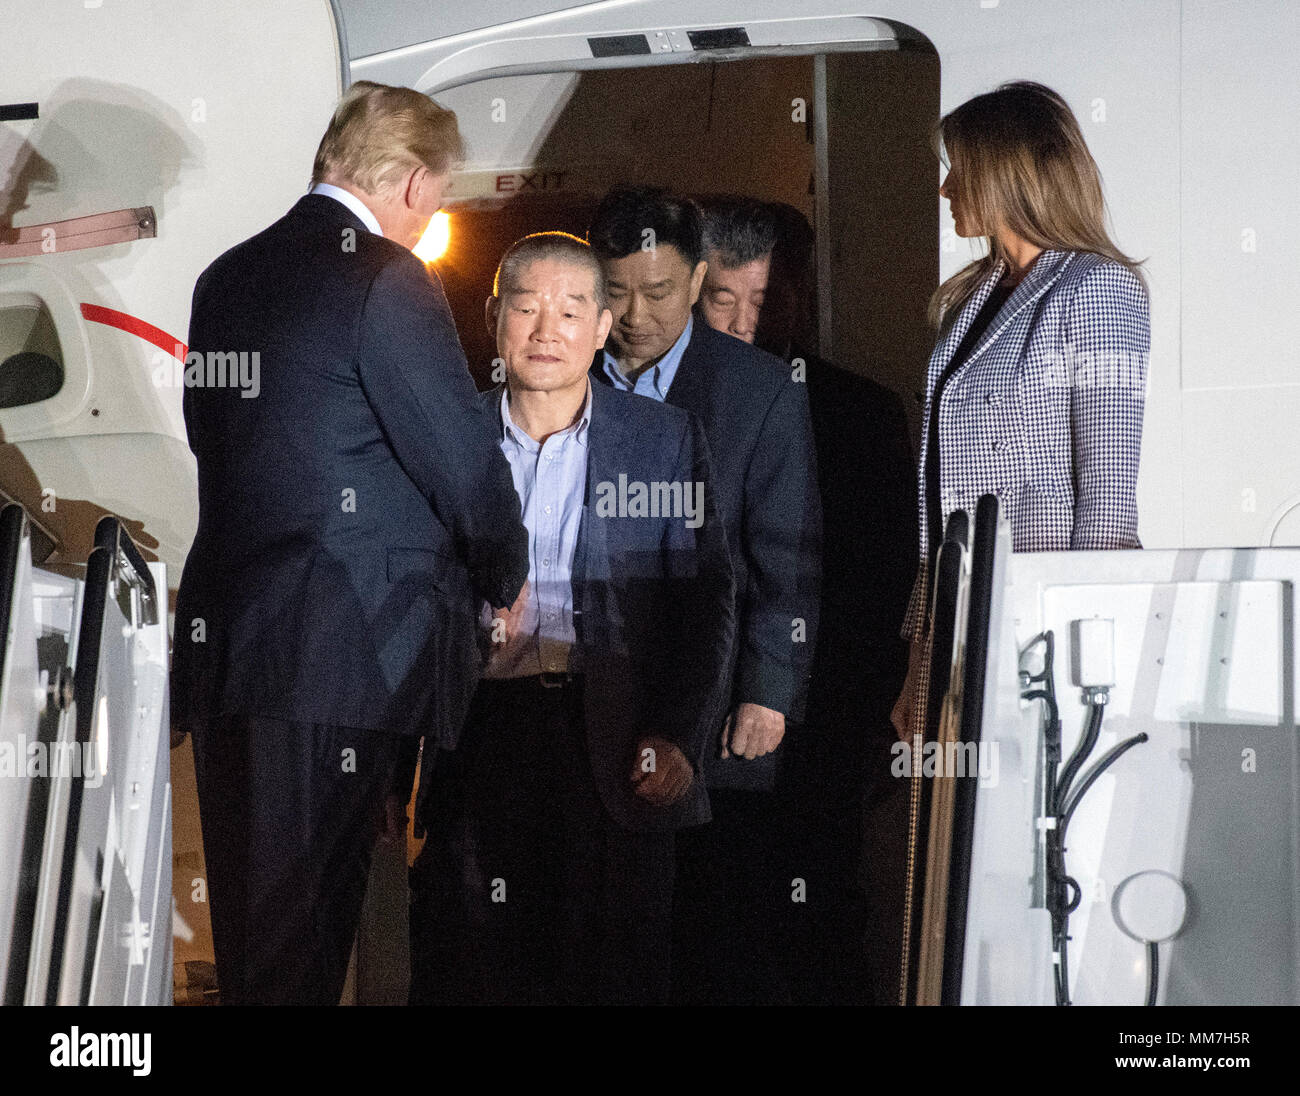 El Presidente de Estados Unidos, Donald J. Trump celebra Kim Dong Chul Kim Hak Canción y Tony Kim de vuelta a los Estados Unidos en la base conjunta Andrews en Maryland el jueves, 10 de mayo de 2018. Los tres hombres fueron encarcelados en Corea del Norte por períodos que oscilan entre uno y dos años. Fueron liberados a la Secretaria de Estado de EEUU Mike Pompeo como un gesto de buena voluntad en los prolegómenos de las conversaciones entre el Presidente Trump y el líder norcoreano Kim Jong-nu. Crédito: Ron Sachs/CNP | uso en todo el mundo Foto de stock